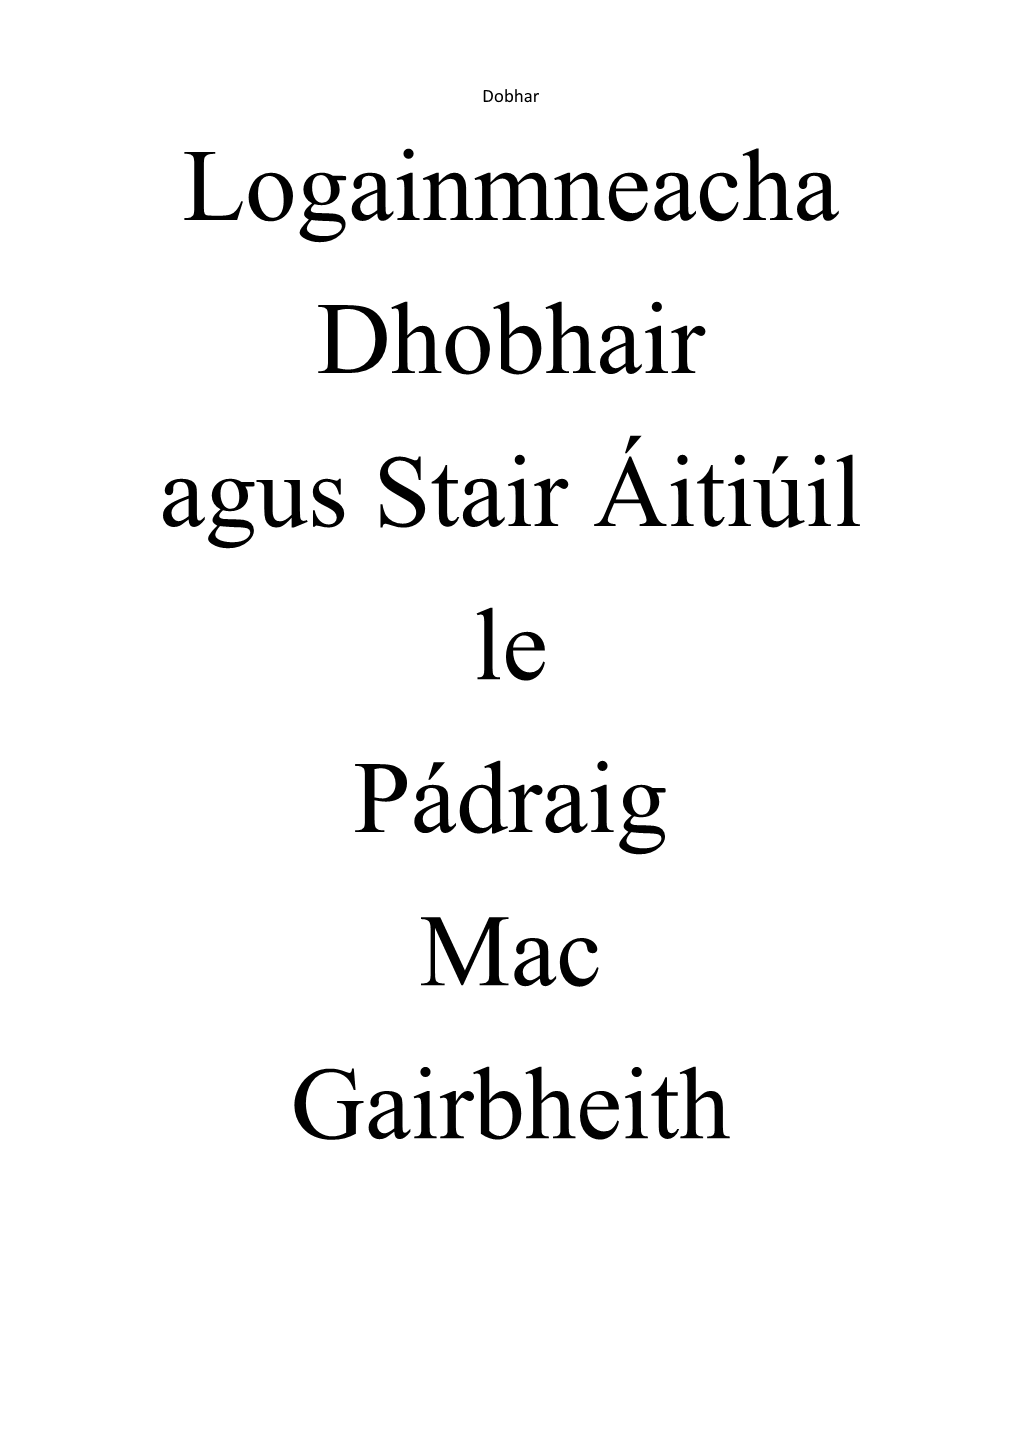 Logainmneacha Dhobhair Agus Stair Áitiúil Le Pádraig Mac Gairbheith